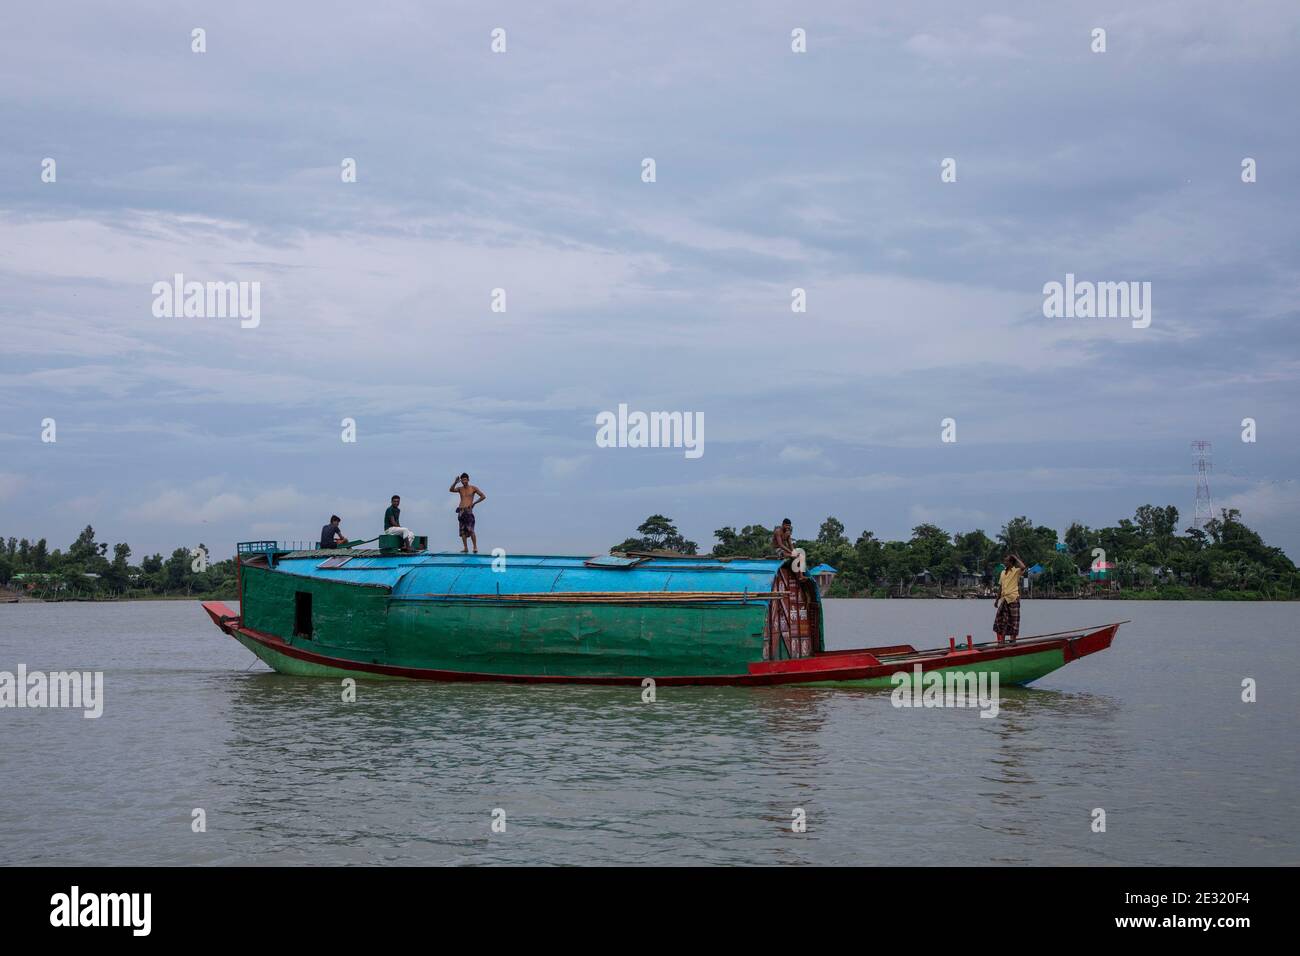 Un bateau à moteur transporte des marchandises sur la rivière meghna, au Bangladesh. Banque D'Images